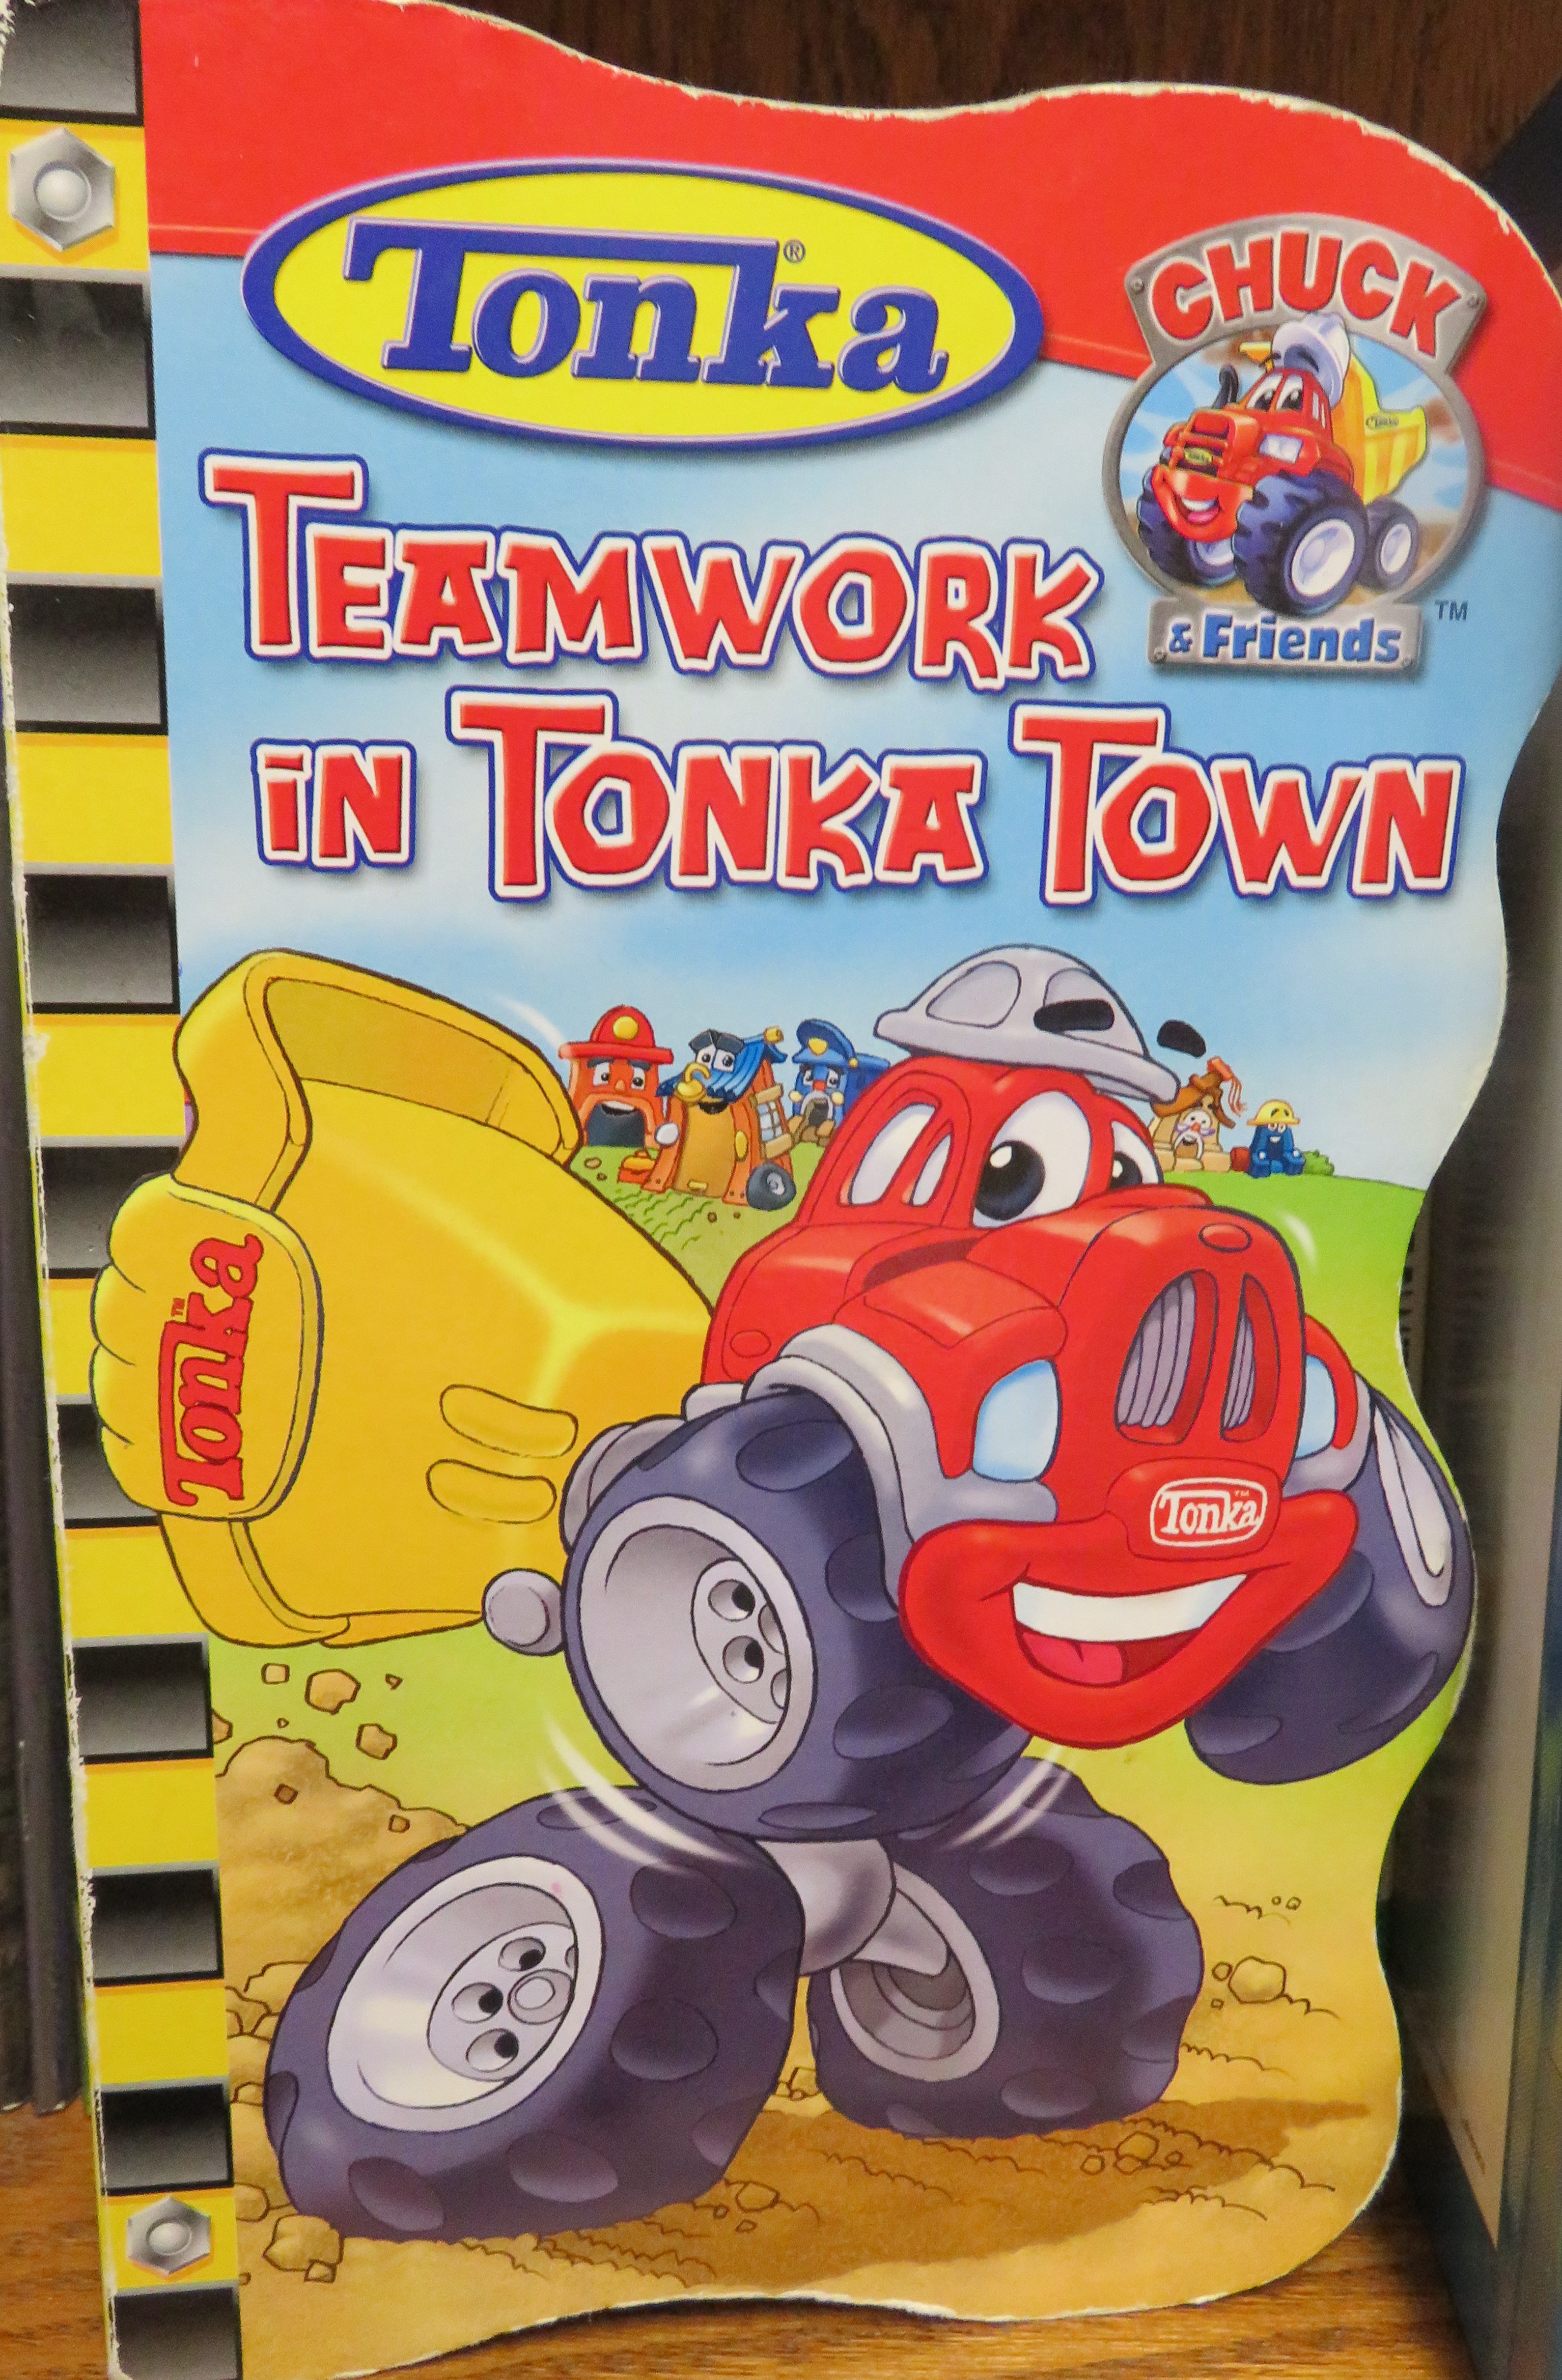 Teamwork in Tonka Town